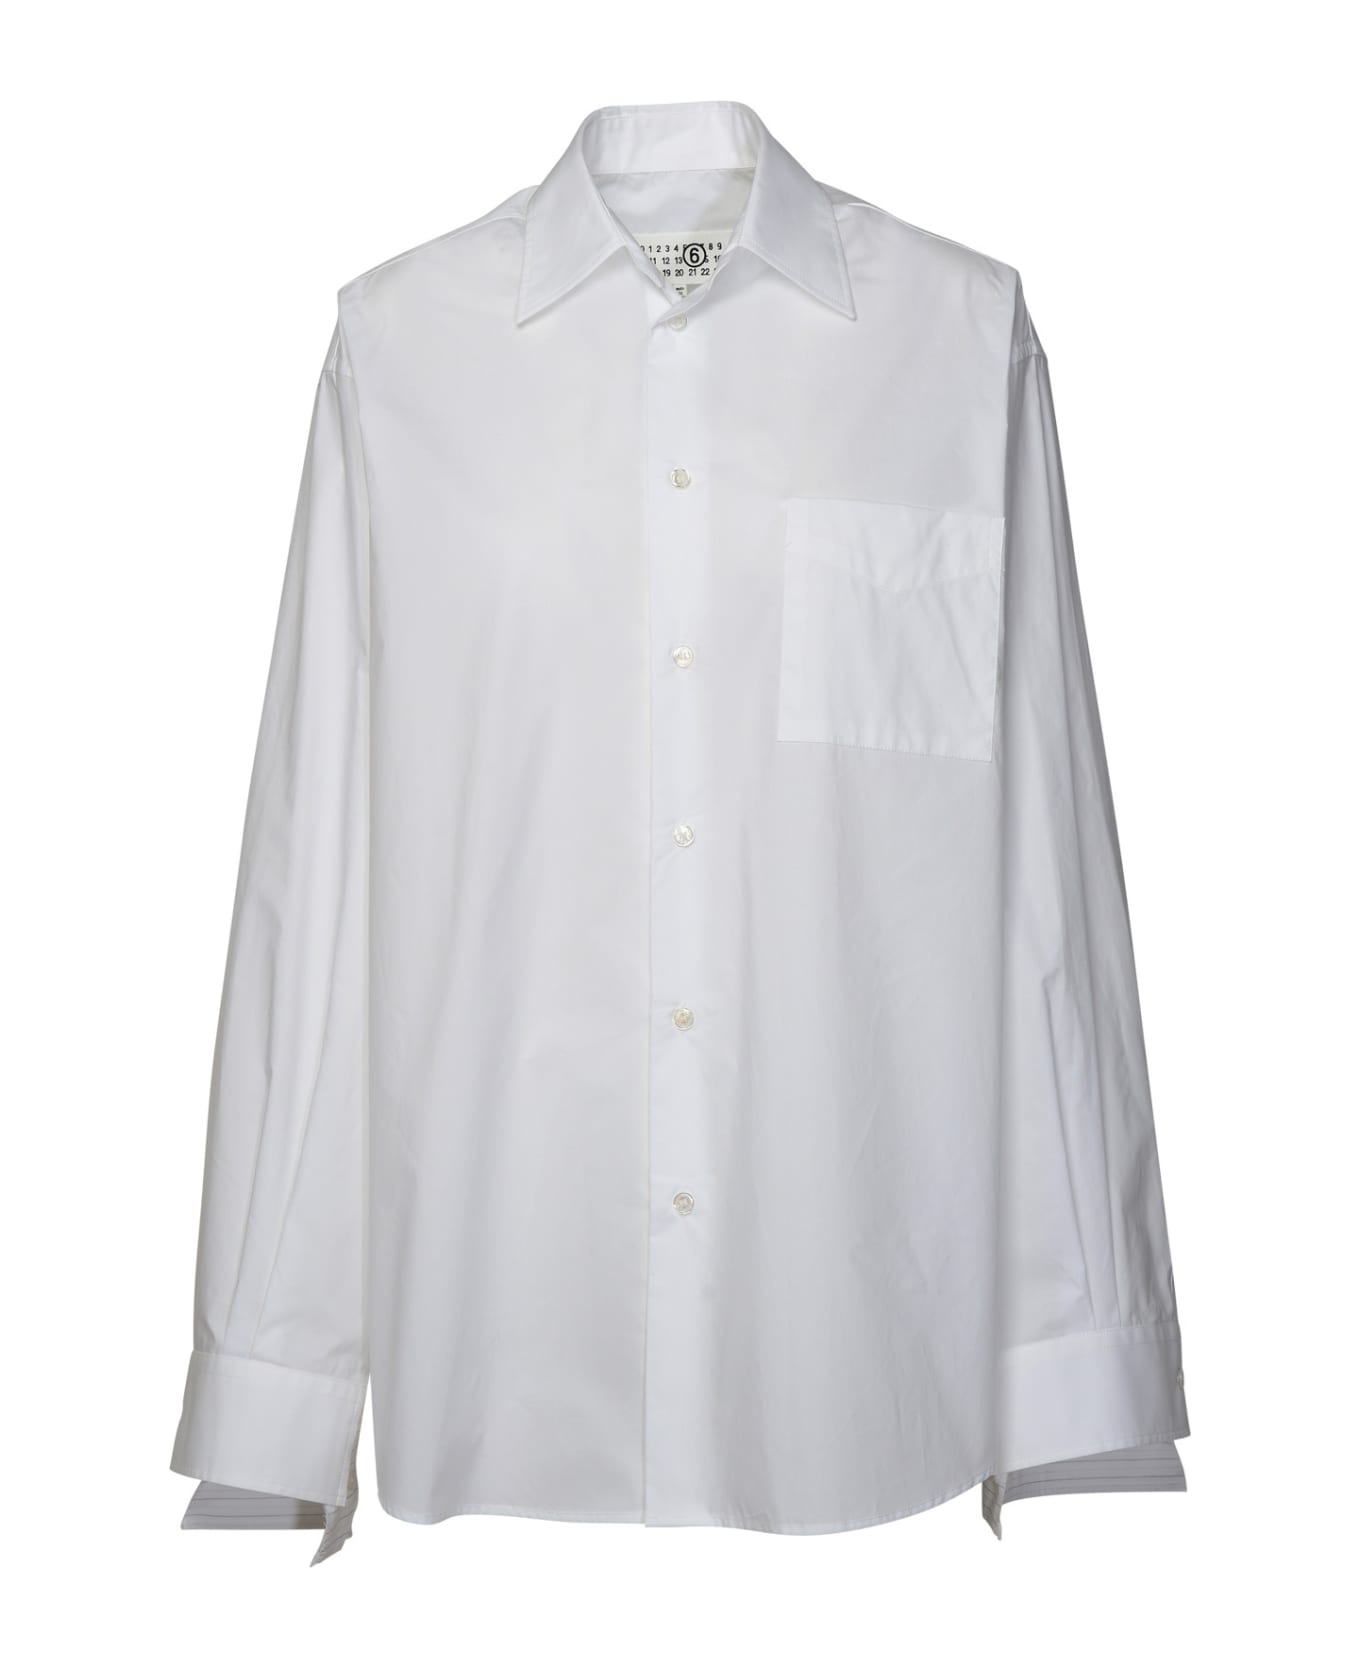 MM6 Maison Margiela White Cotton Shirt - White